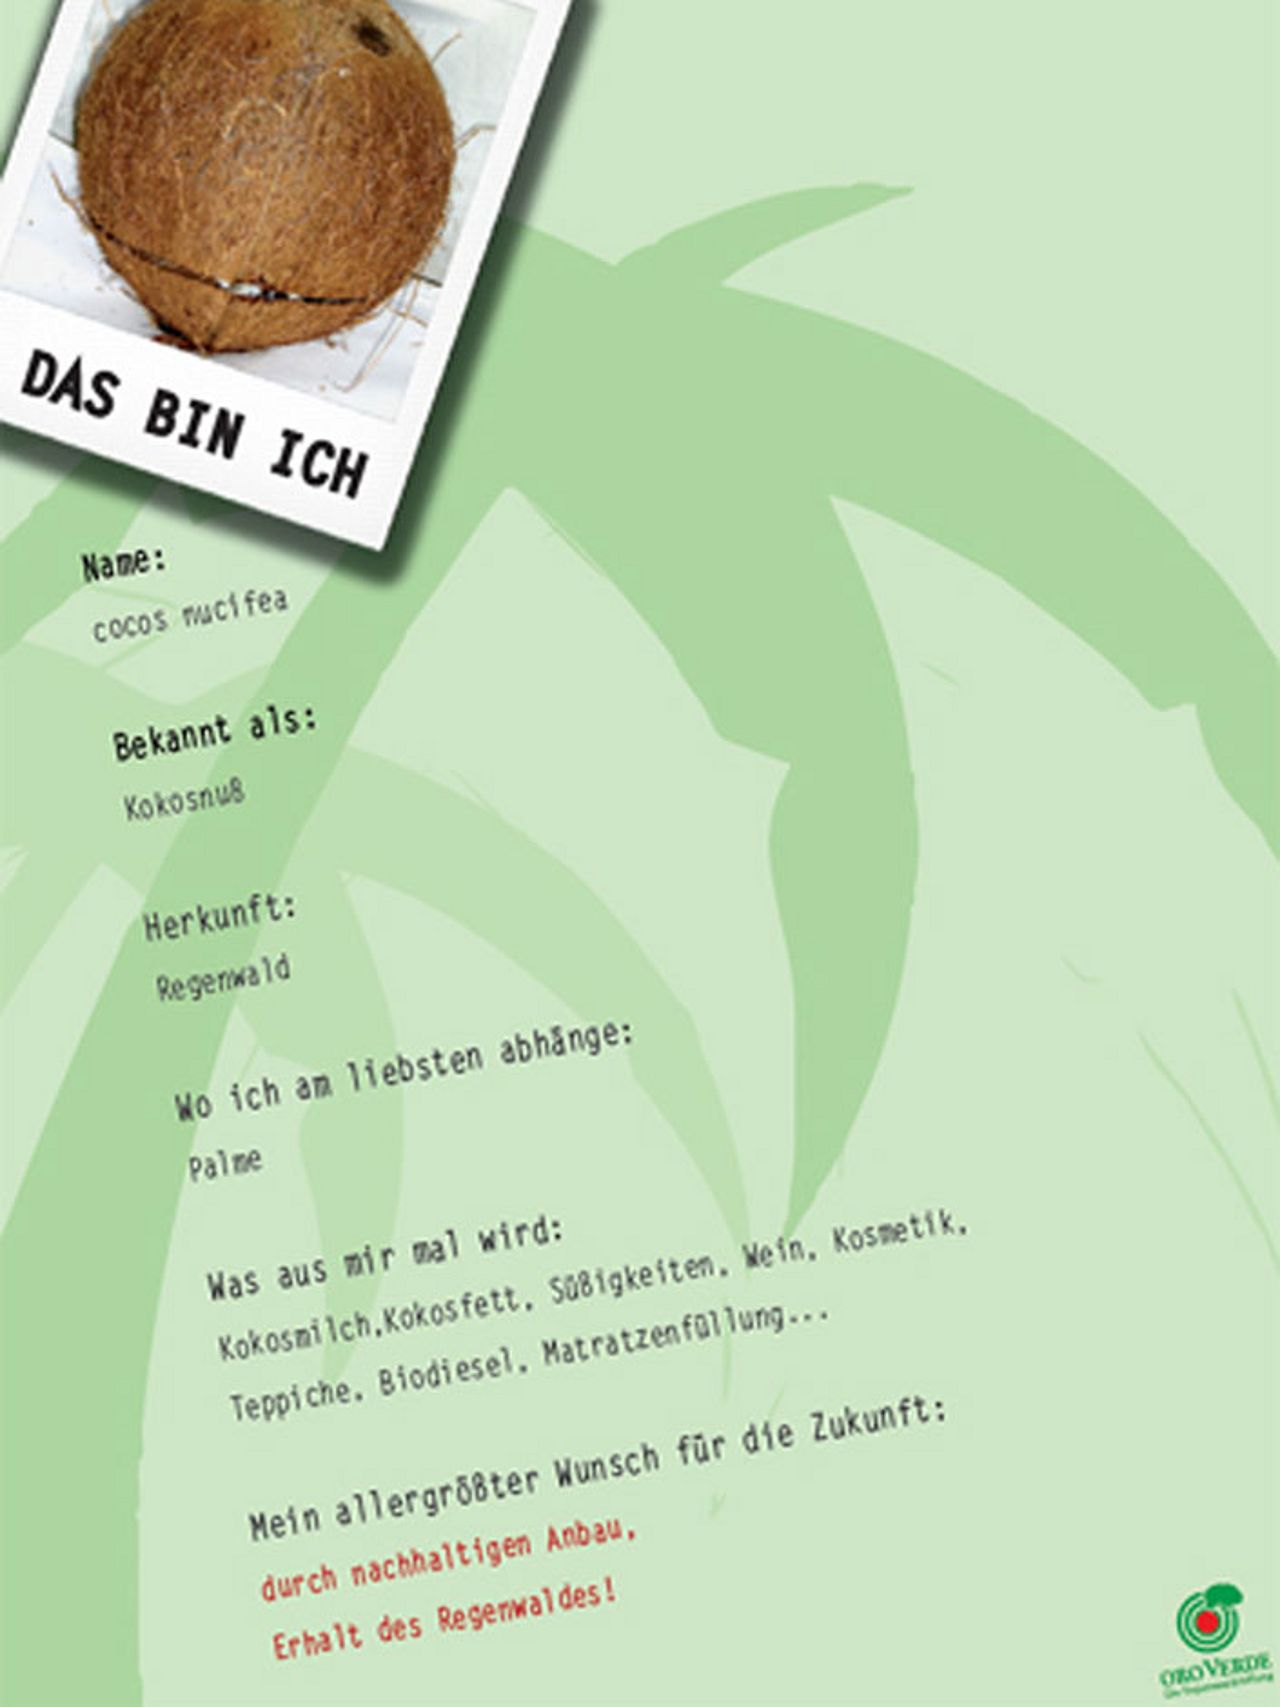 Kokosnuss Plakat im Rahmen des Schülerwettbewerbs "Geist ist geil"